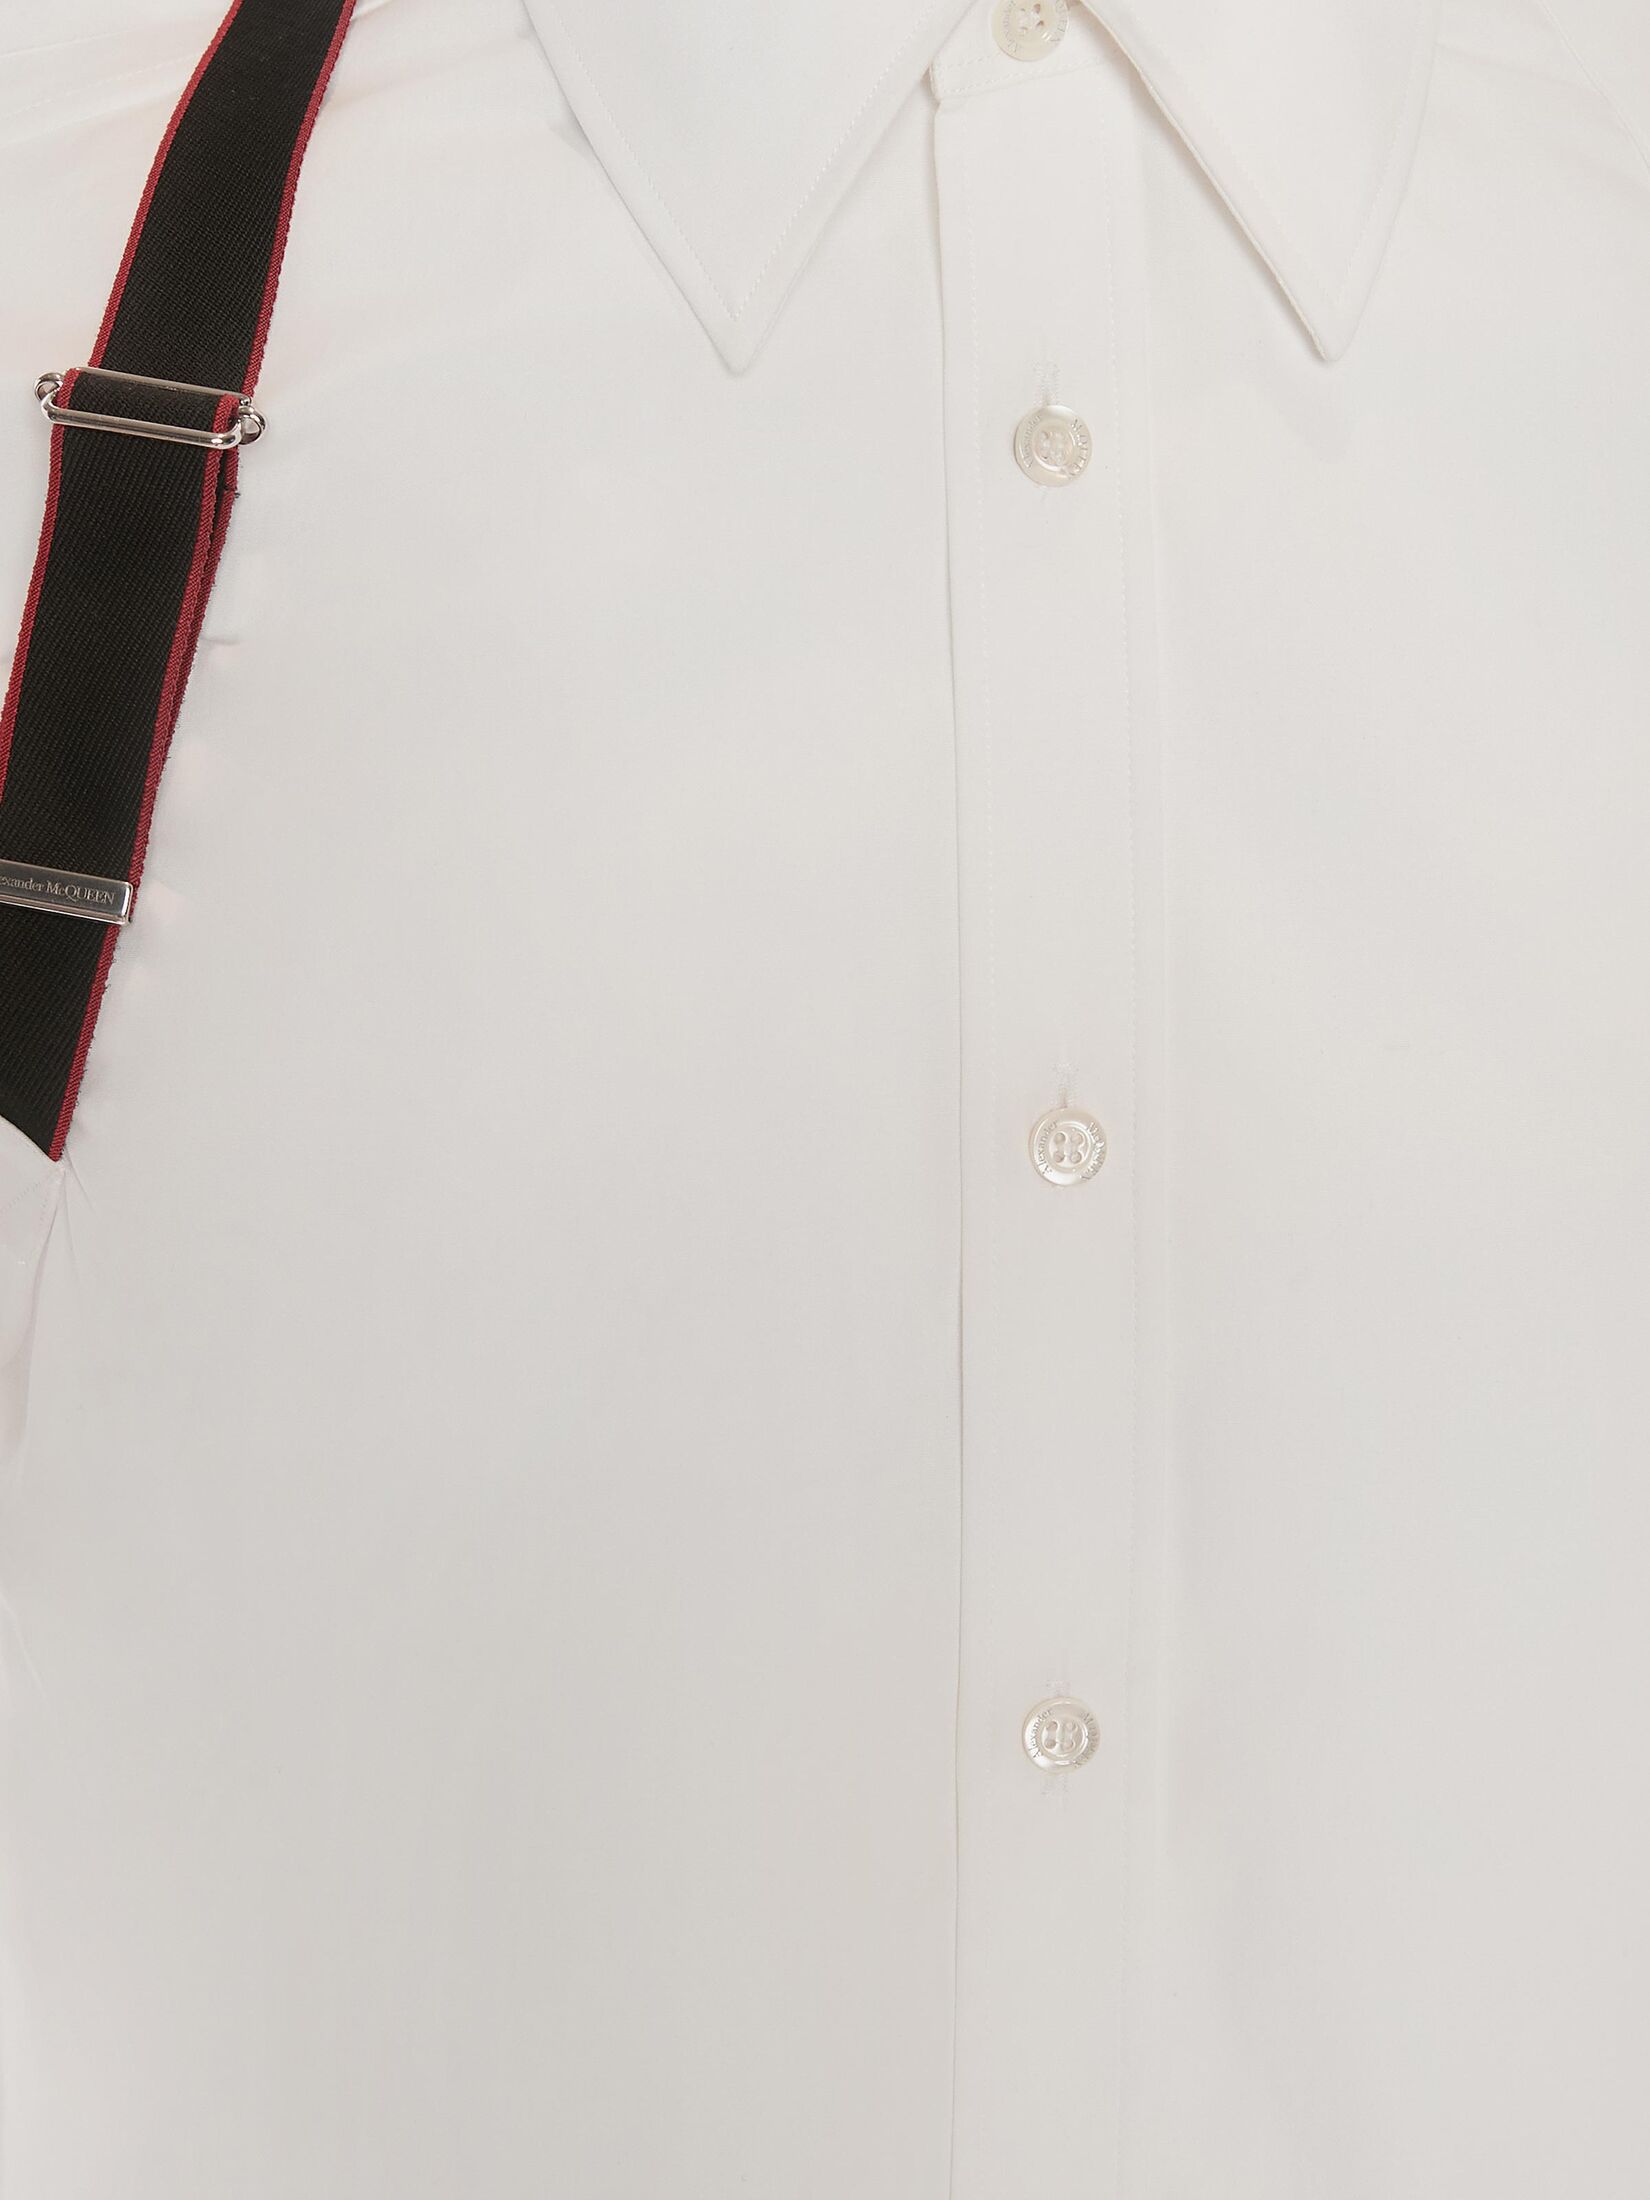 Alexander McQueen Signature Harness Shirt